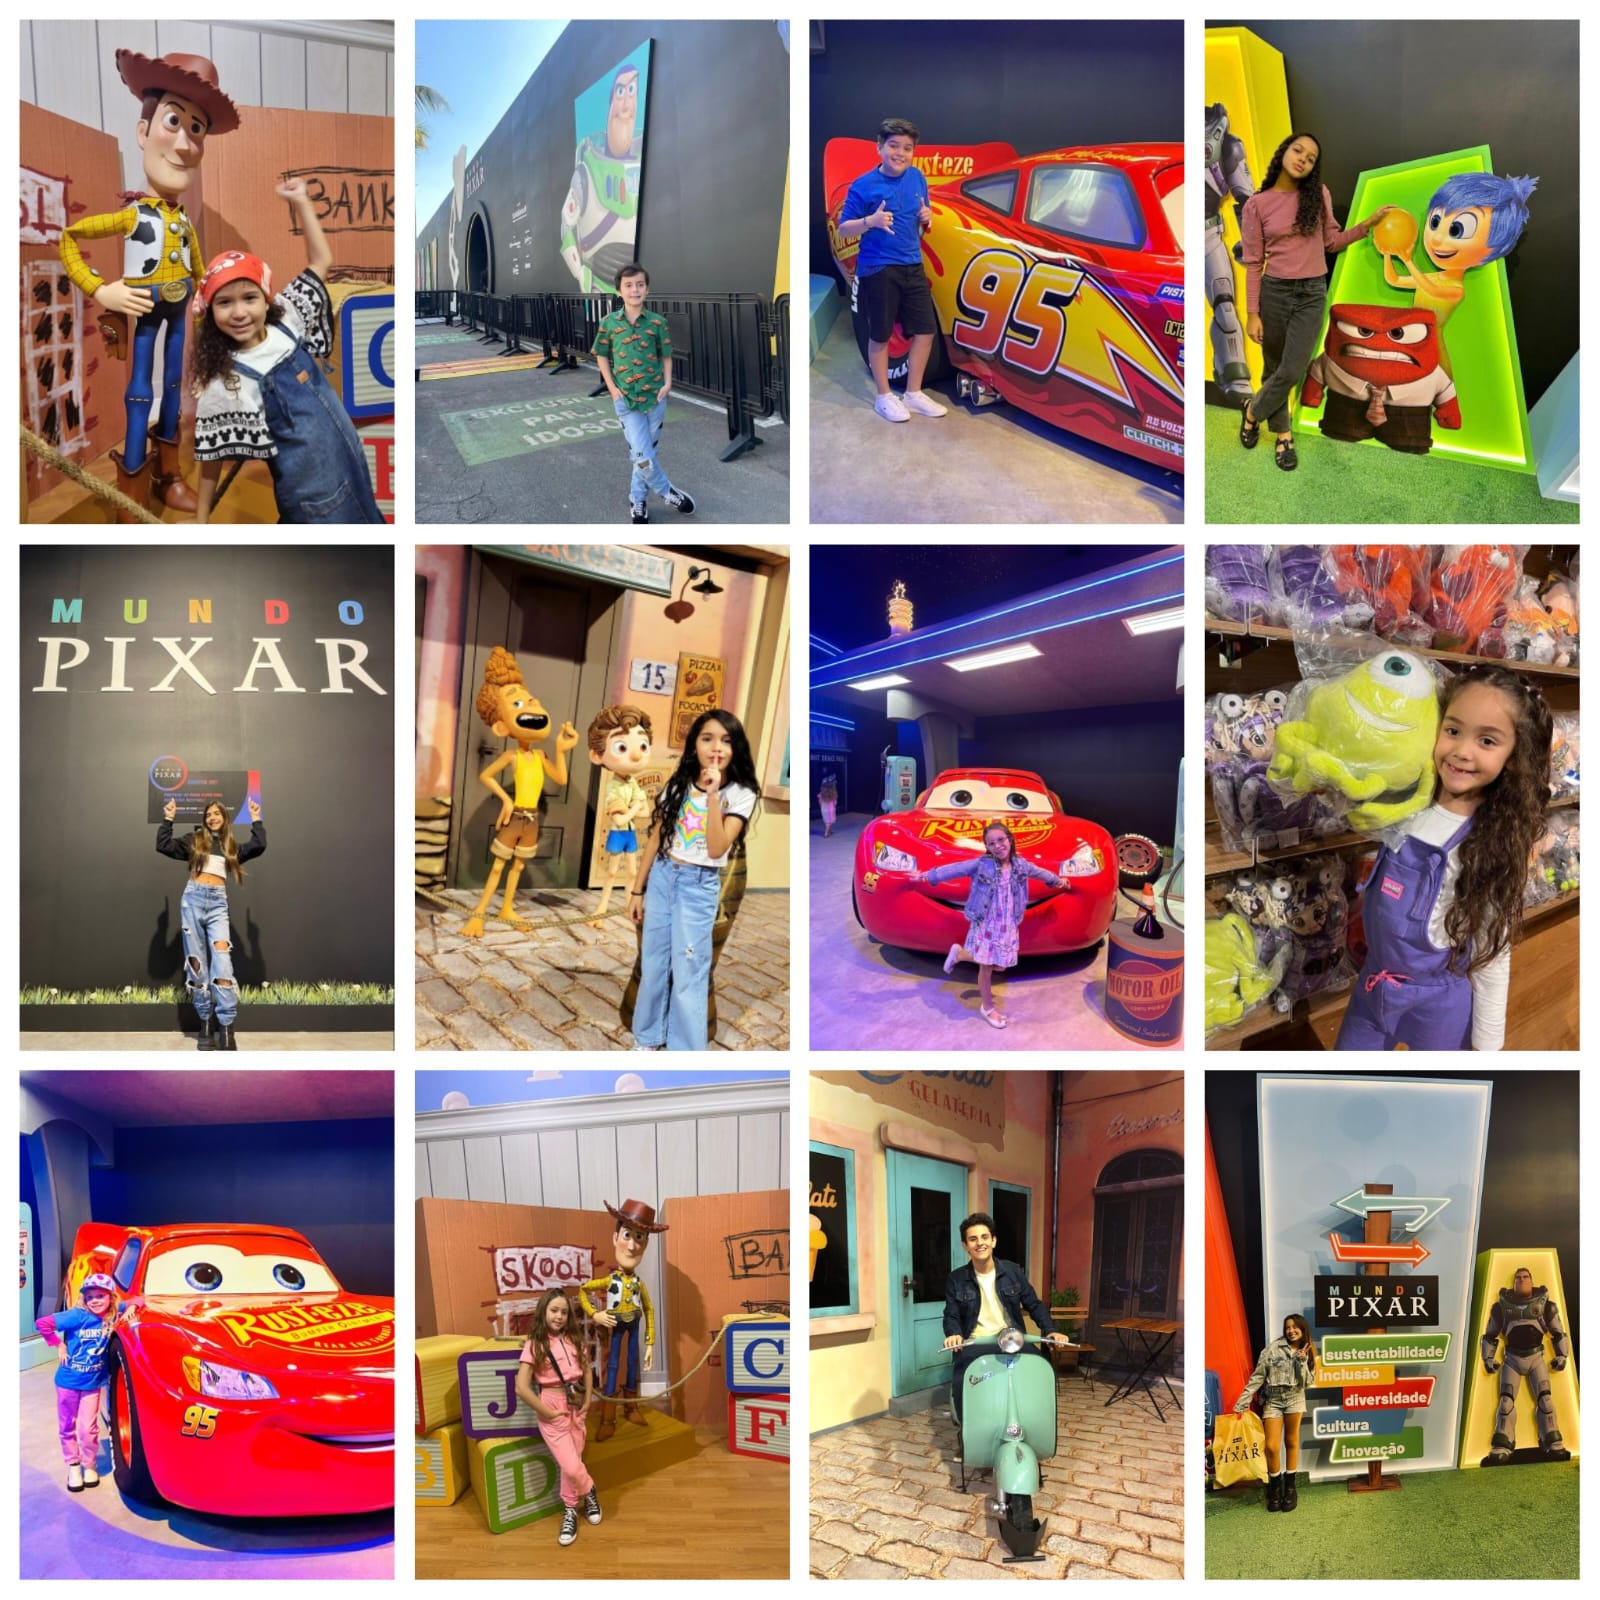 Diversão: Atores Mirins Prestigiam Evento “O Mundo Pixar”, No Rio De Janeiro